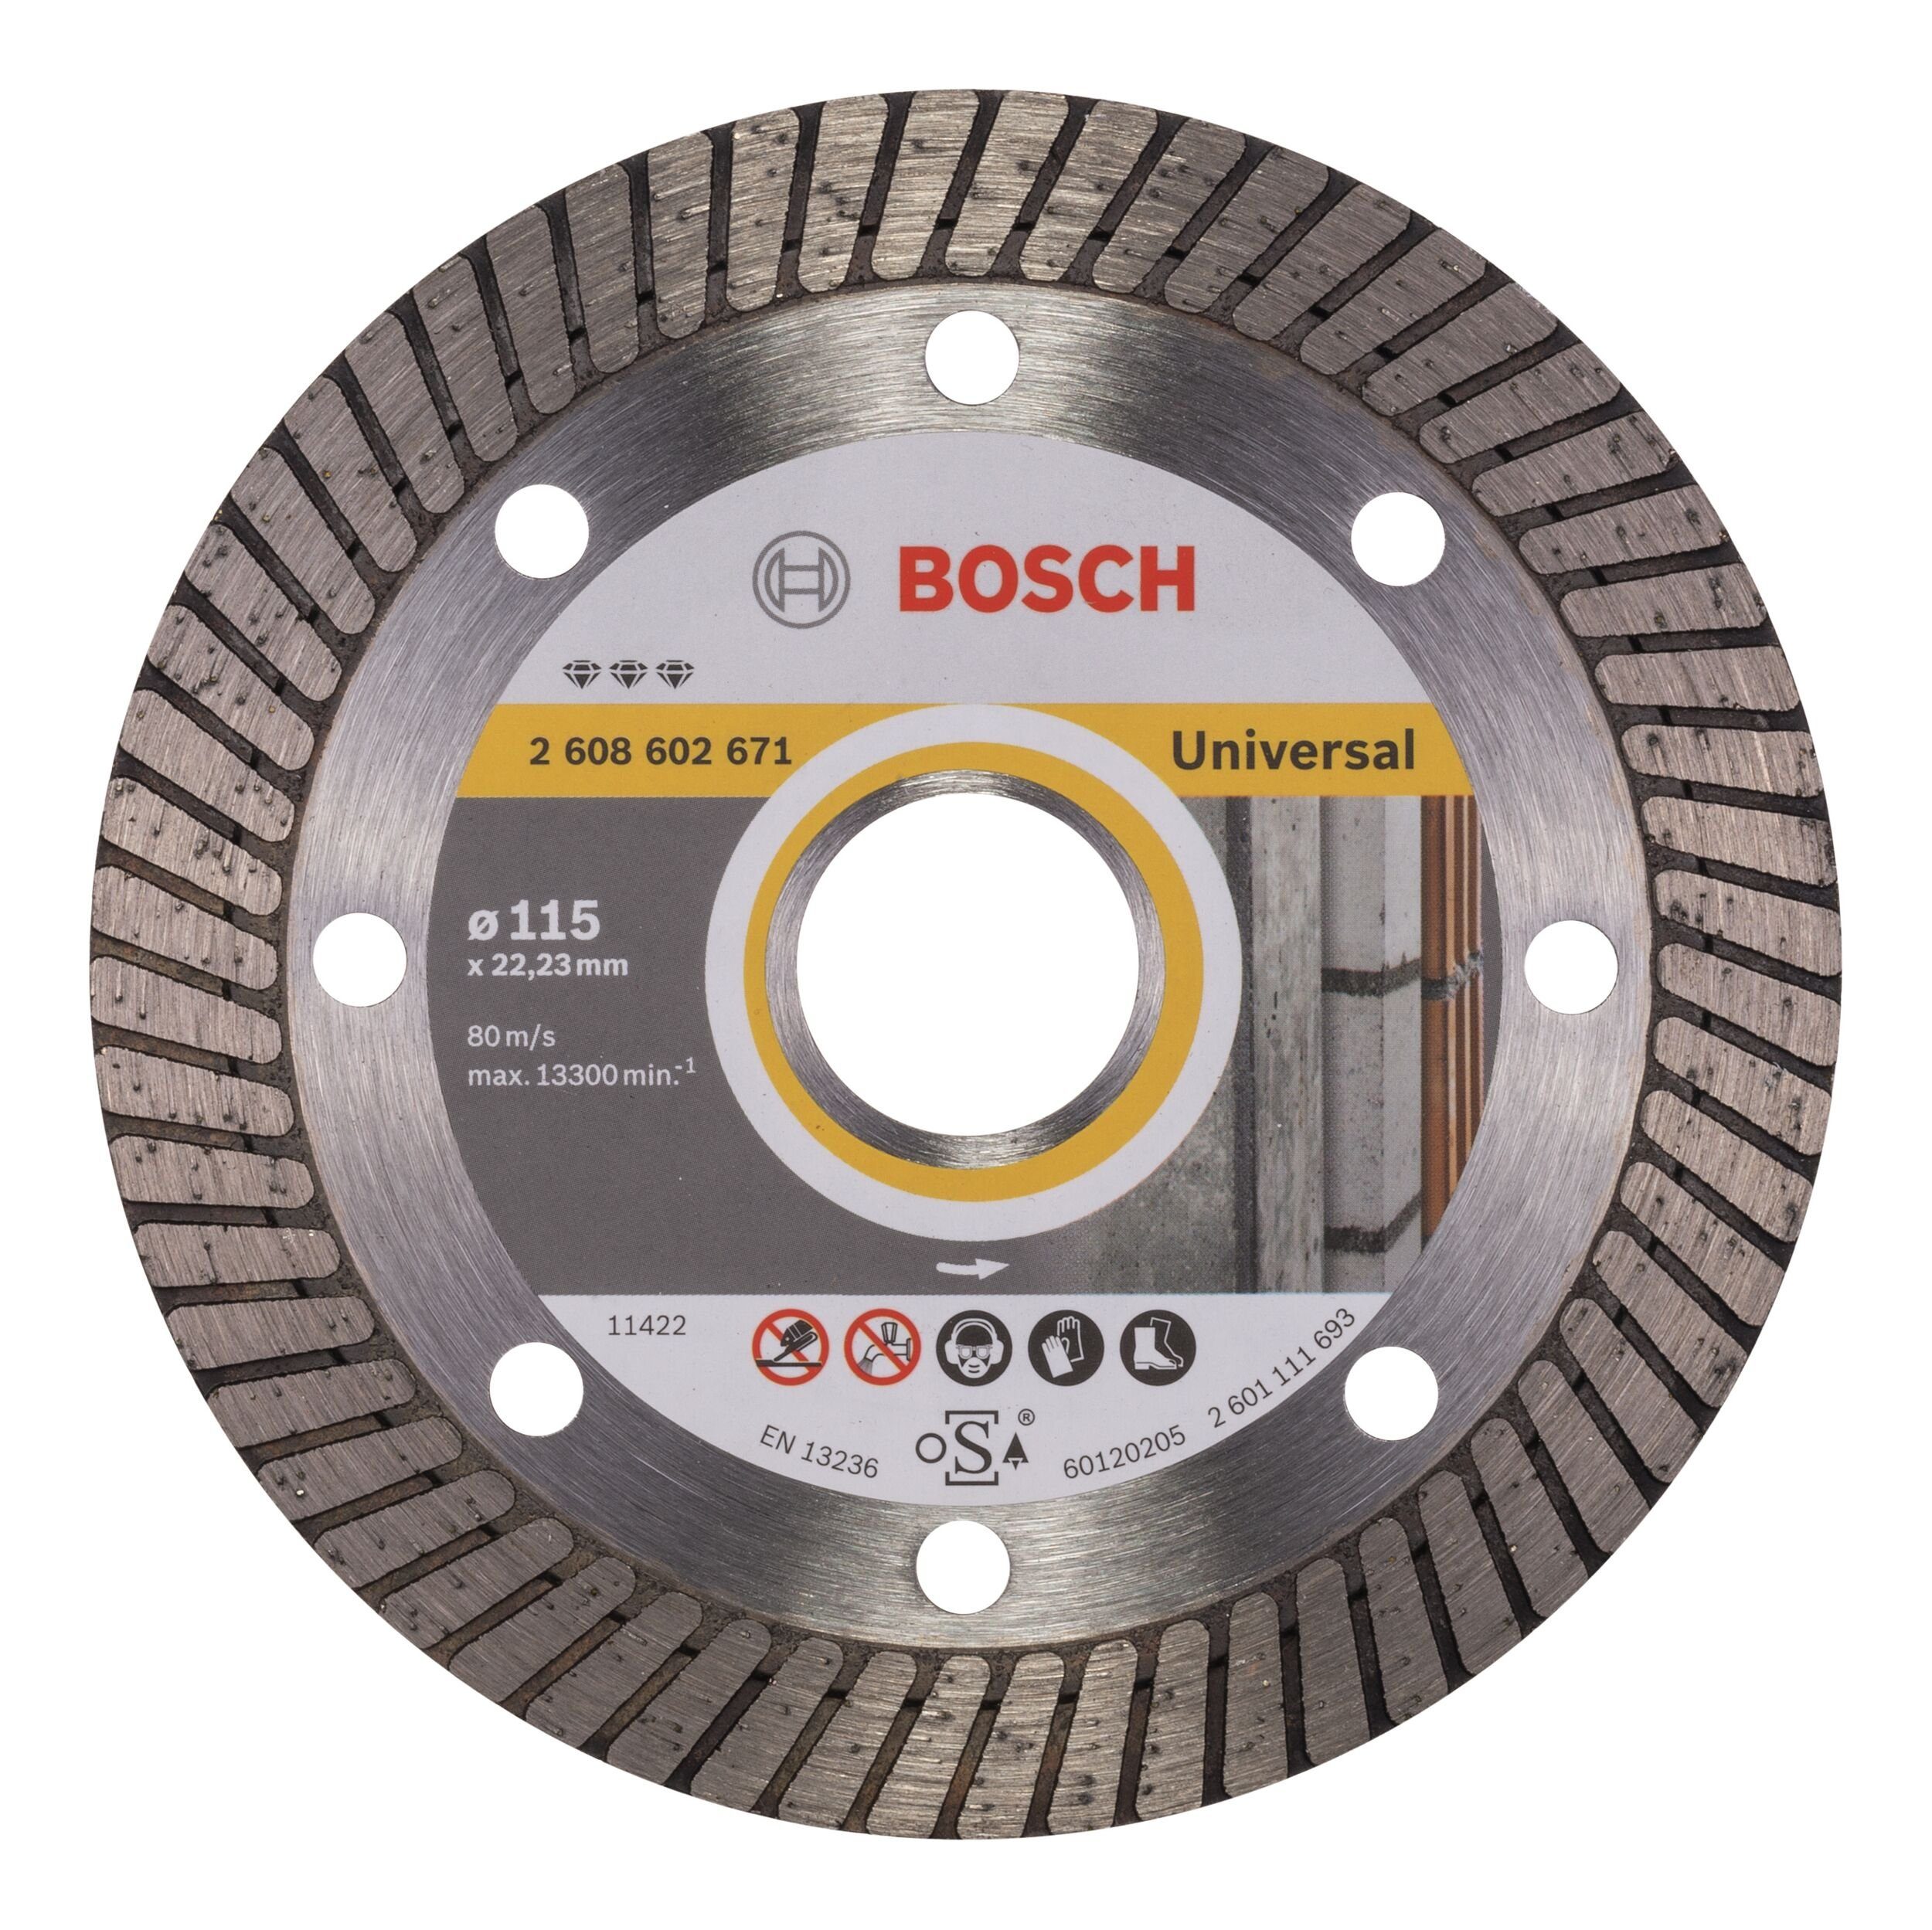 BOSCH Trennscheibe, Ø 115 mm, Best for Universal Turbo Diamanttrennscheibe - 115 x 22,23 x 2,2 x